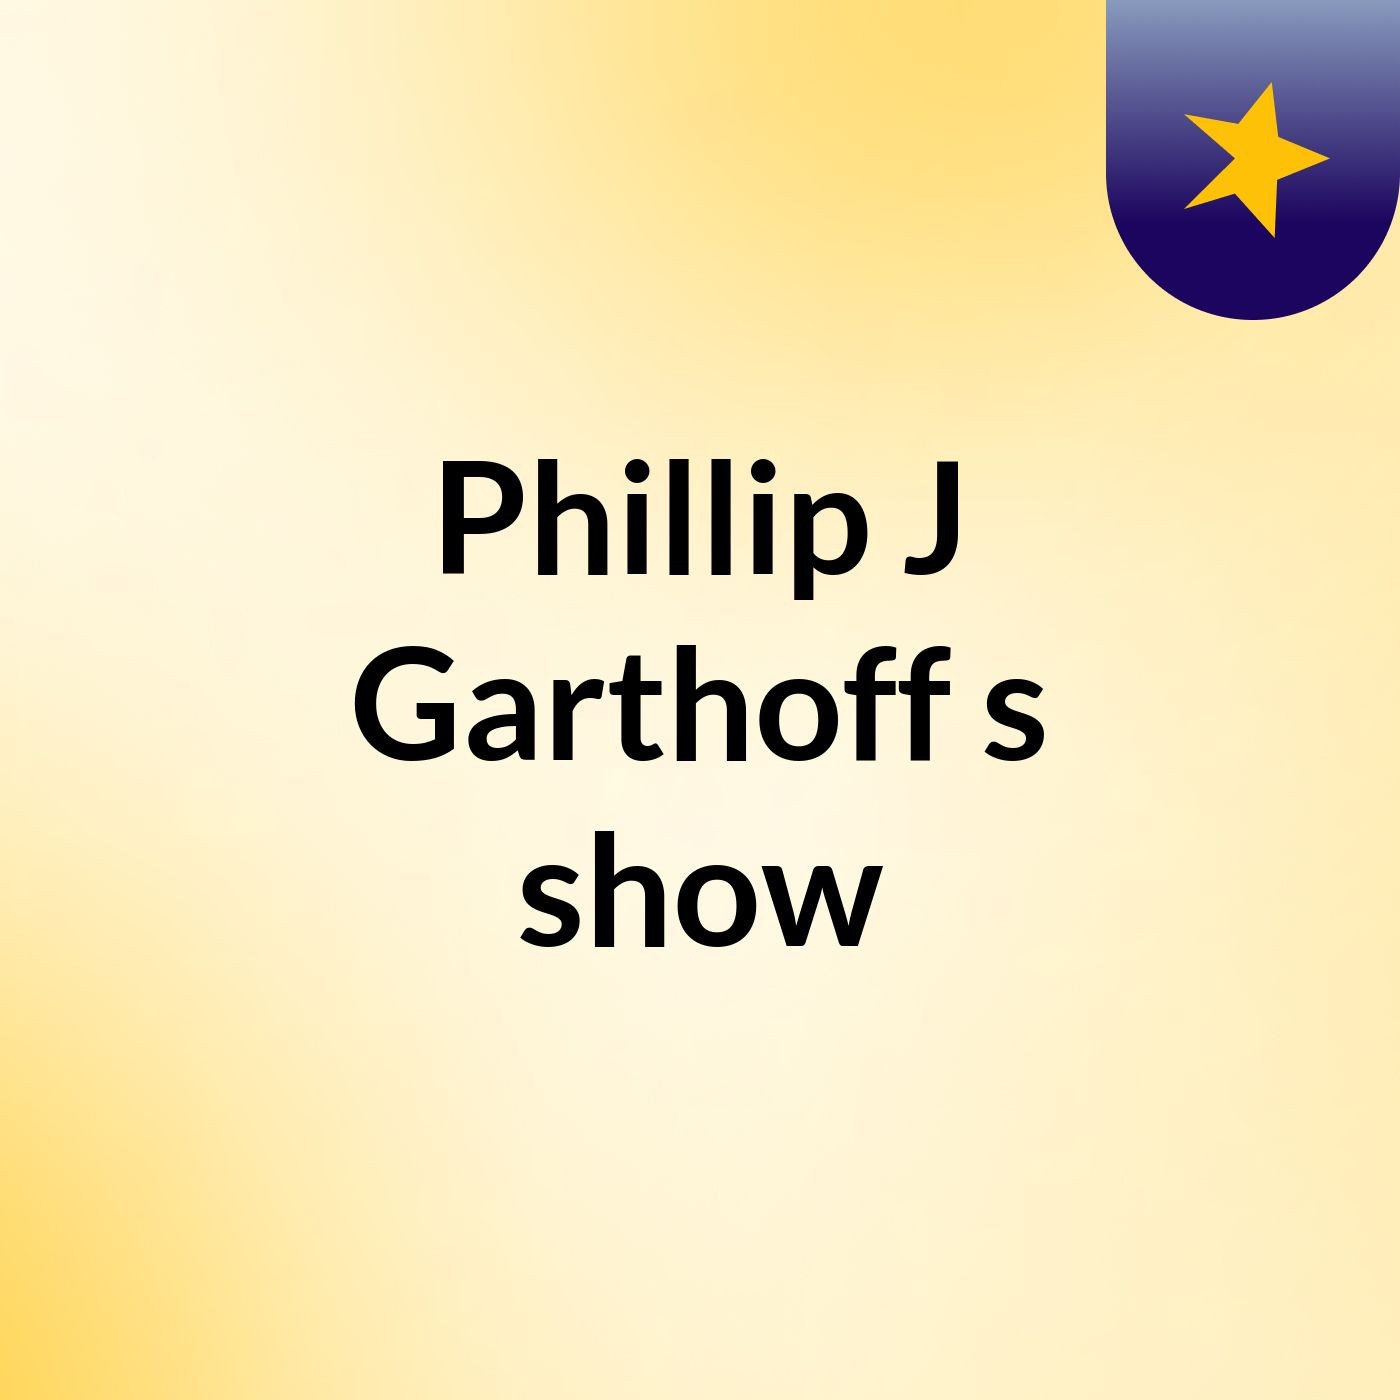 Episode 16 - Phillip J Garthoff's show